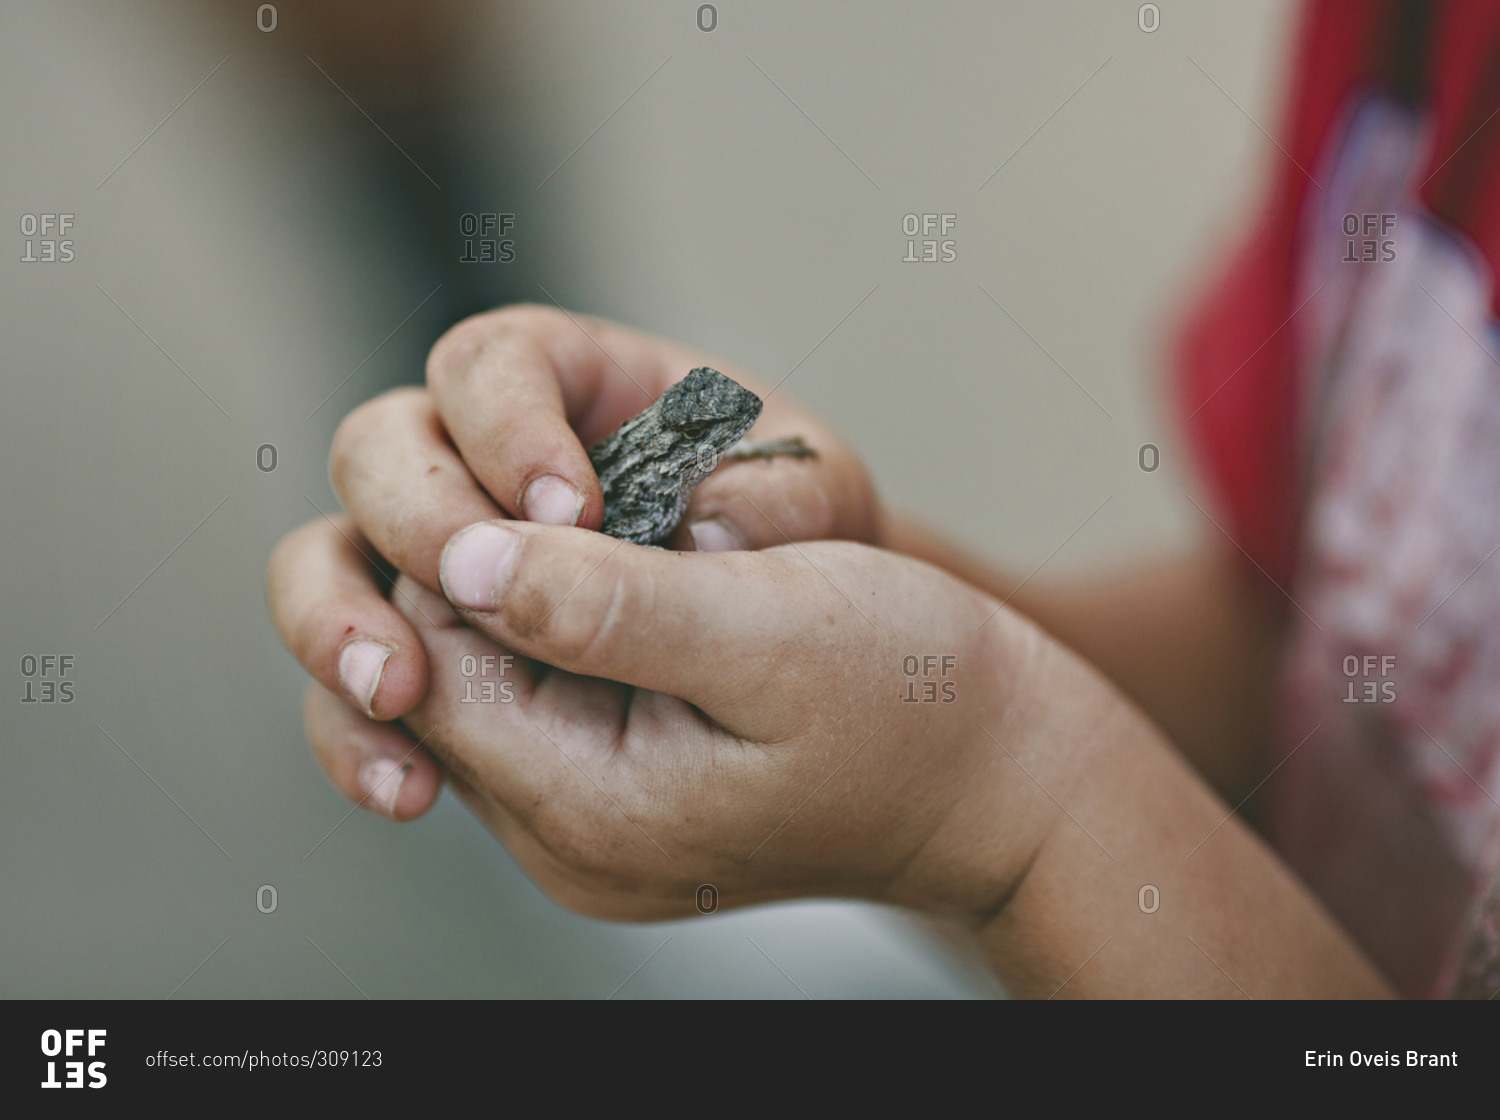 Boy holding a small lizard